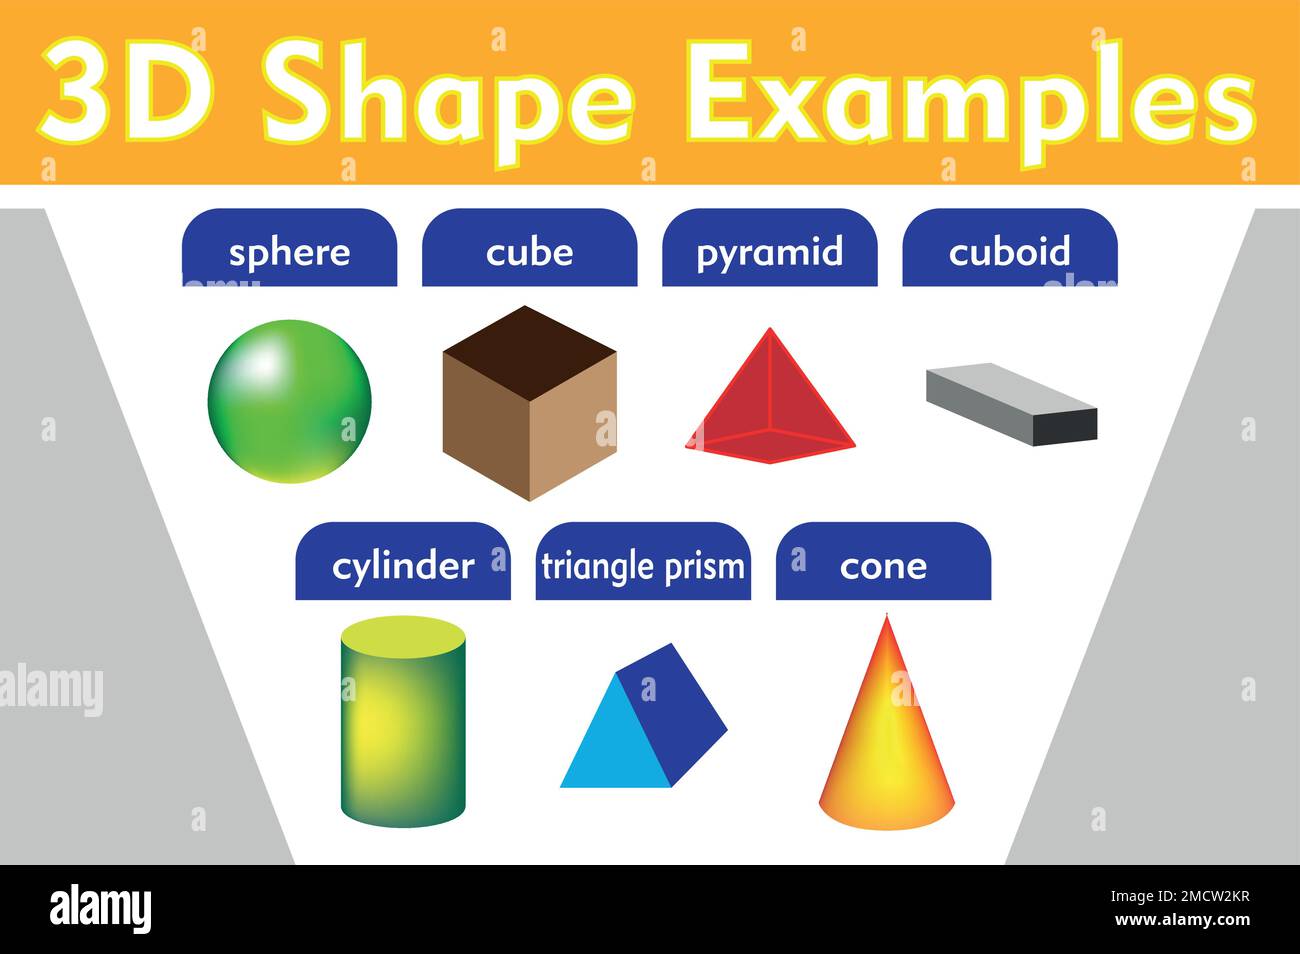 Matériel éducatif objet, sphère, cube. cylindre, pyramide, cuboïde, prisme triangulaire, cône, Mathématiques, 3D échantillons de forme, Illustration de Vecteur